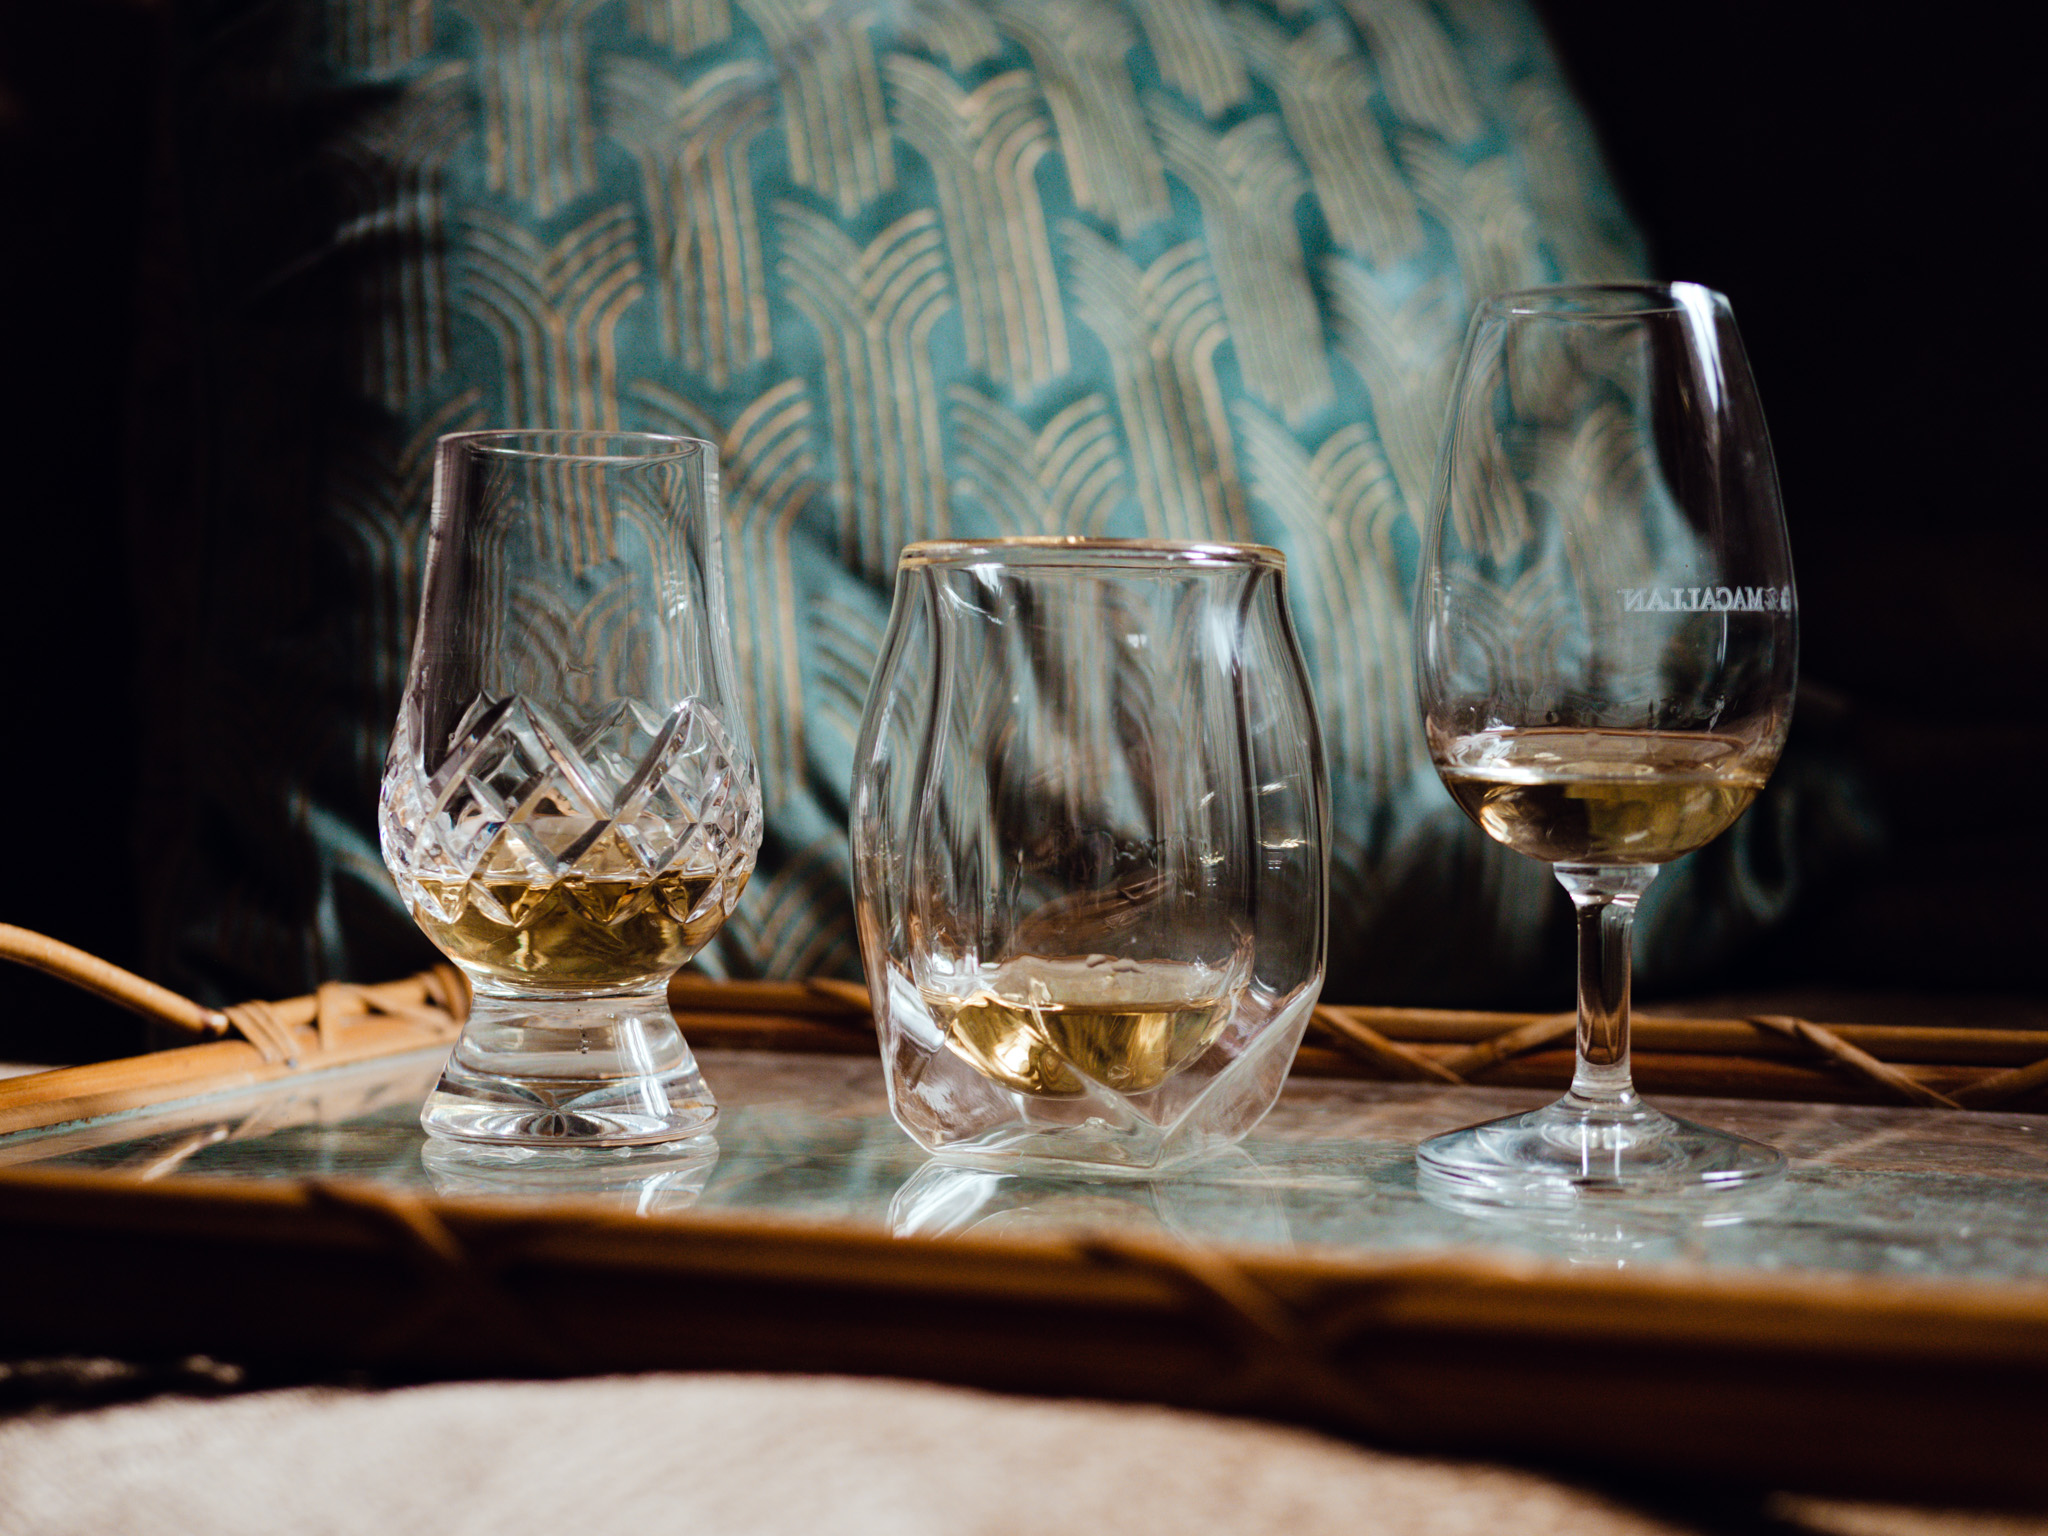 Brumate Nos'r, Glencairn, Norlan Whisky Glass Comparison 